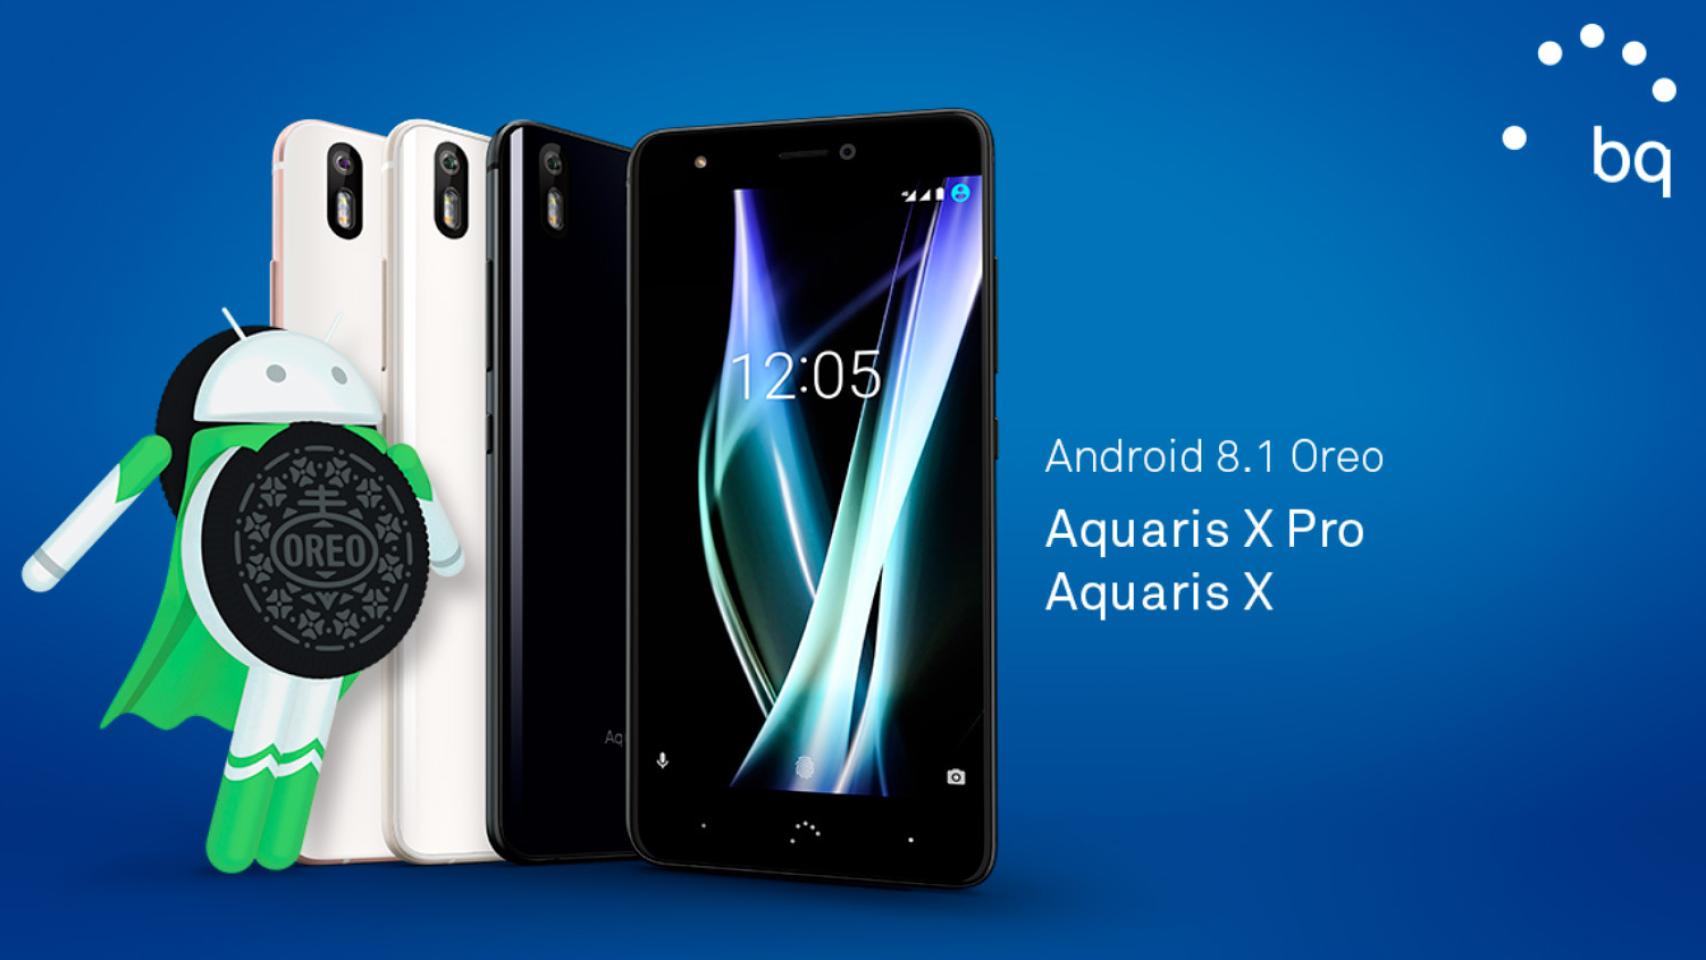 Los BQ Aquaris X y X Pro se actualizan a Android 8.1 Oreo